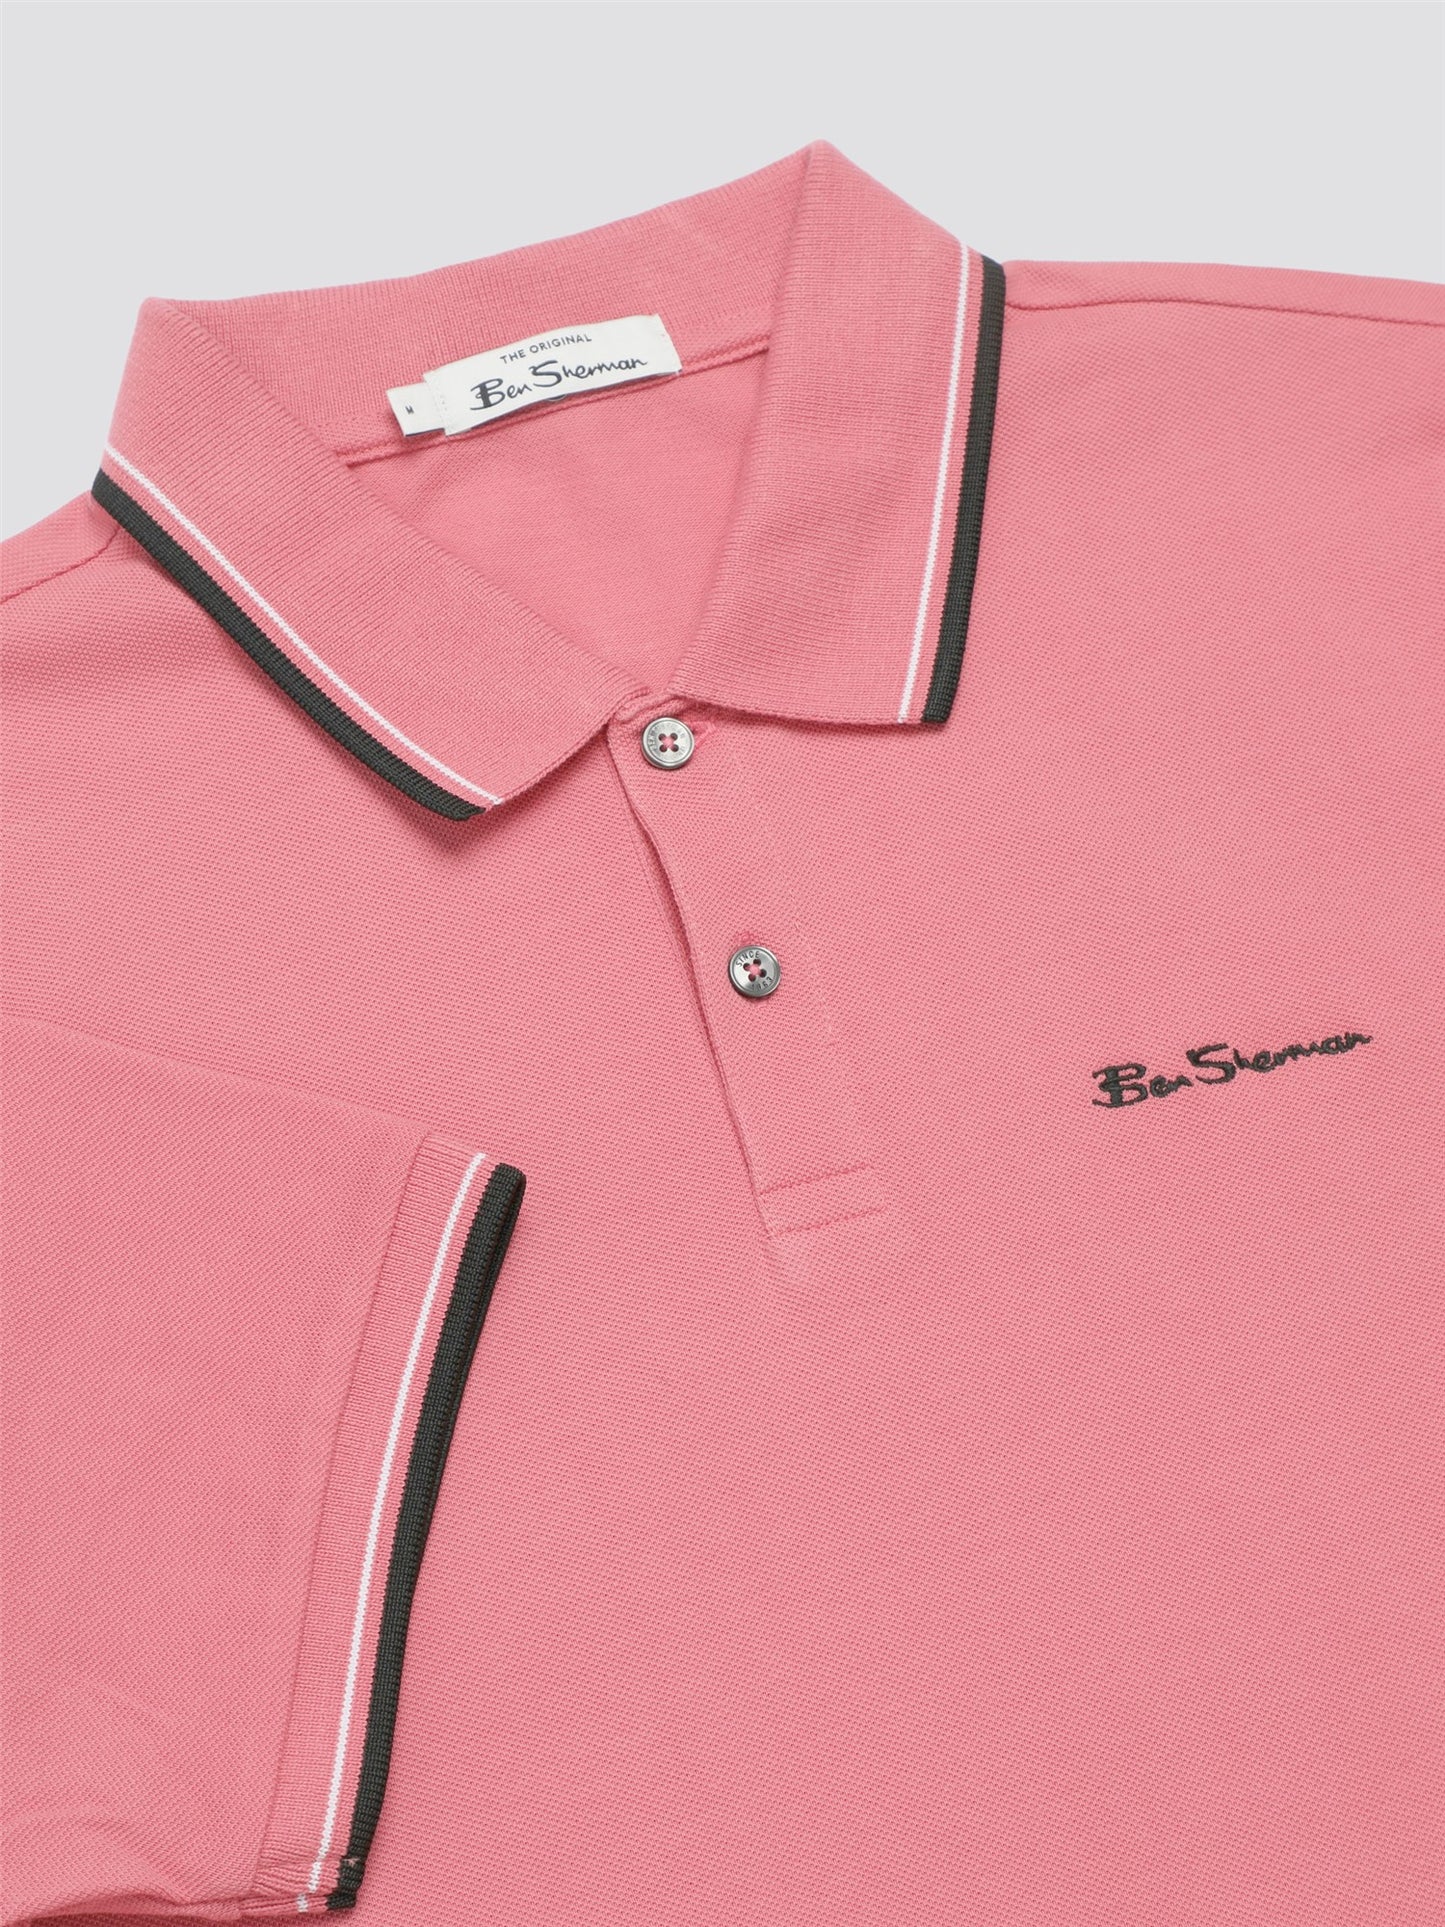 BigMens -  Signature Polo - Dark Pink